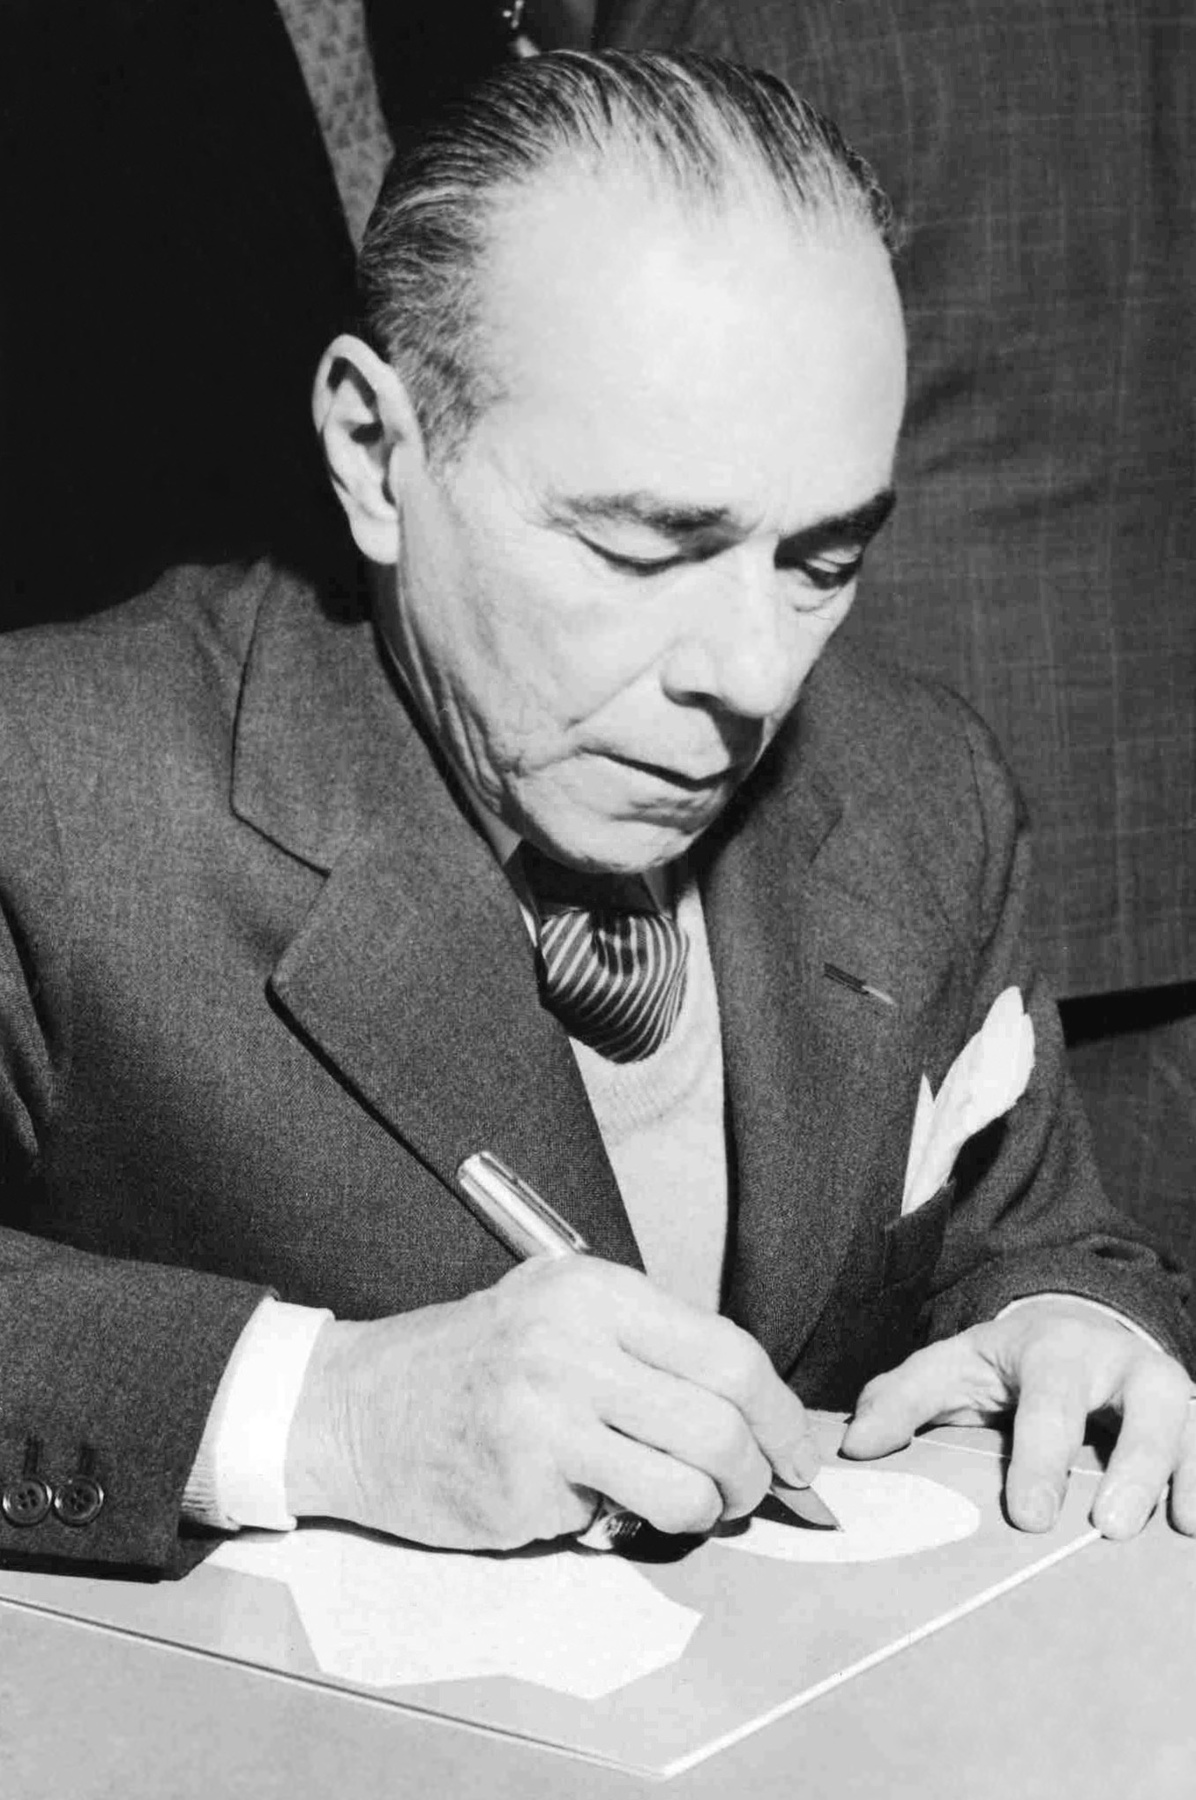 Fotografia em preto e branco. Homem de cabelo lisos para trás, terno escuro. Ele segura uma caneta e escreve em uma folha apoiada sobre uma superfície.